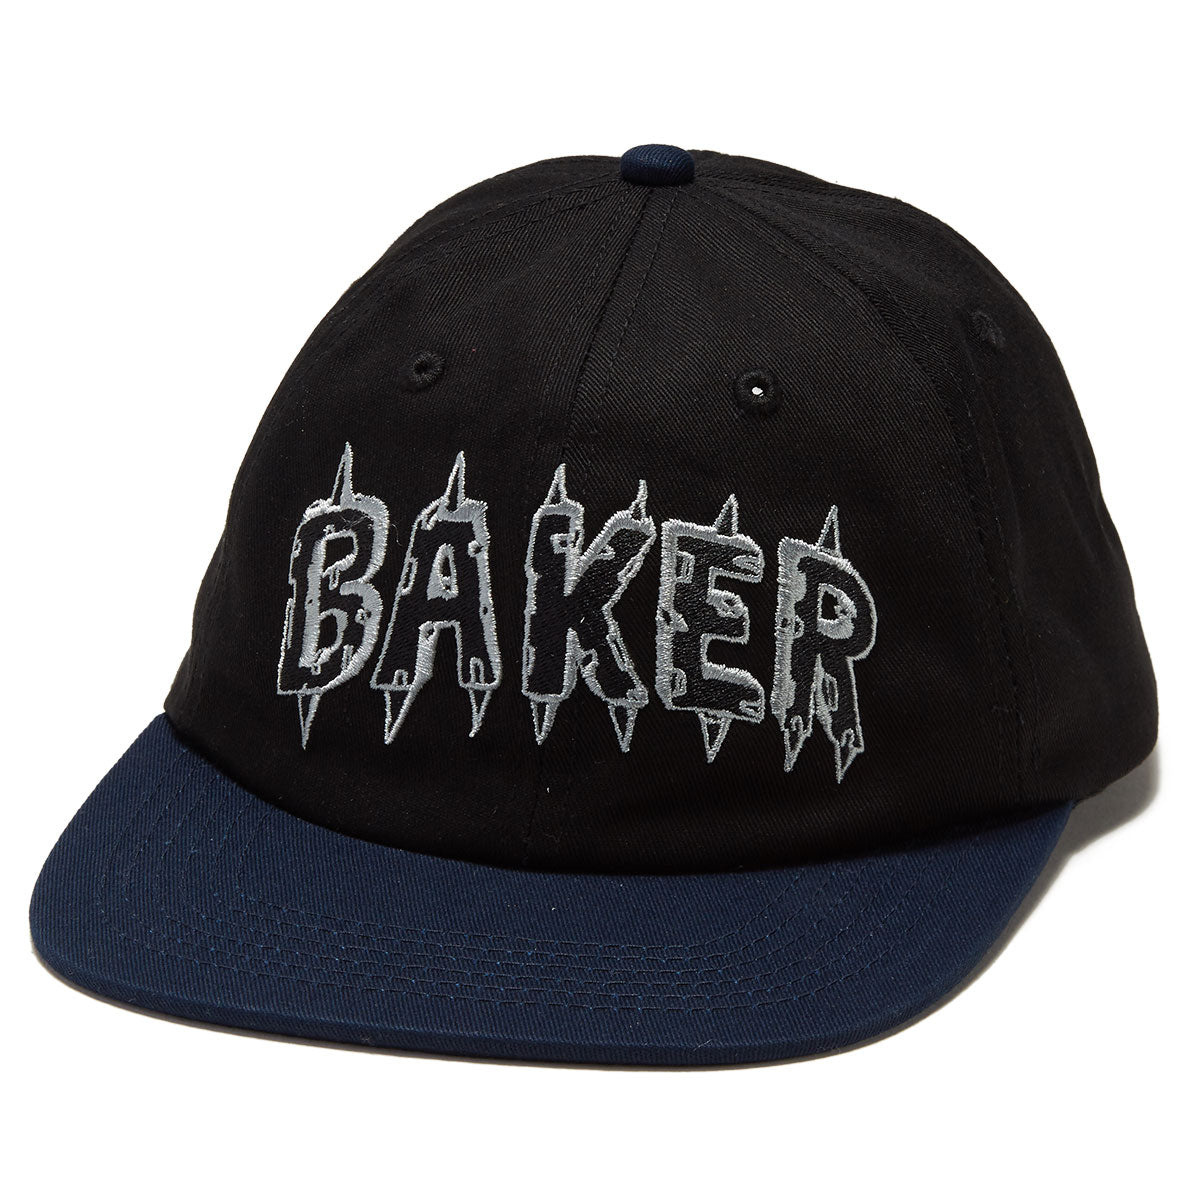 Baker Spike Snapback Hat - Black/Navy image 1